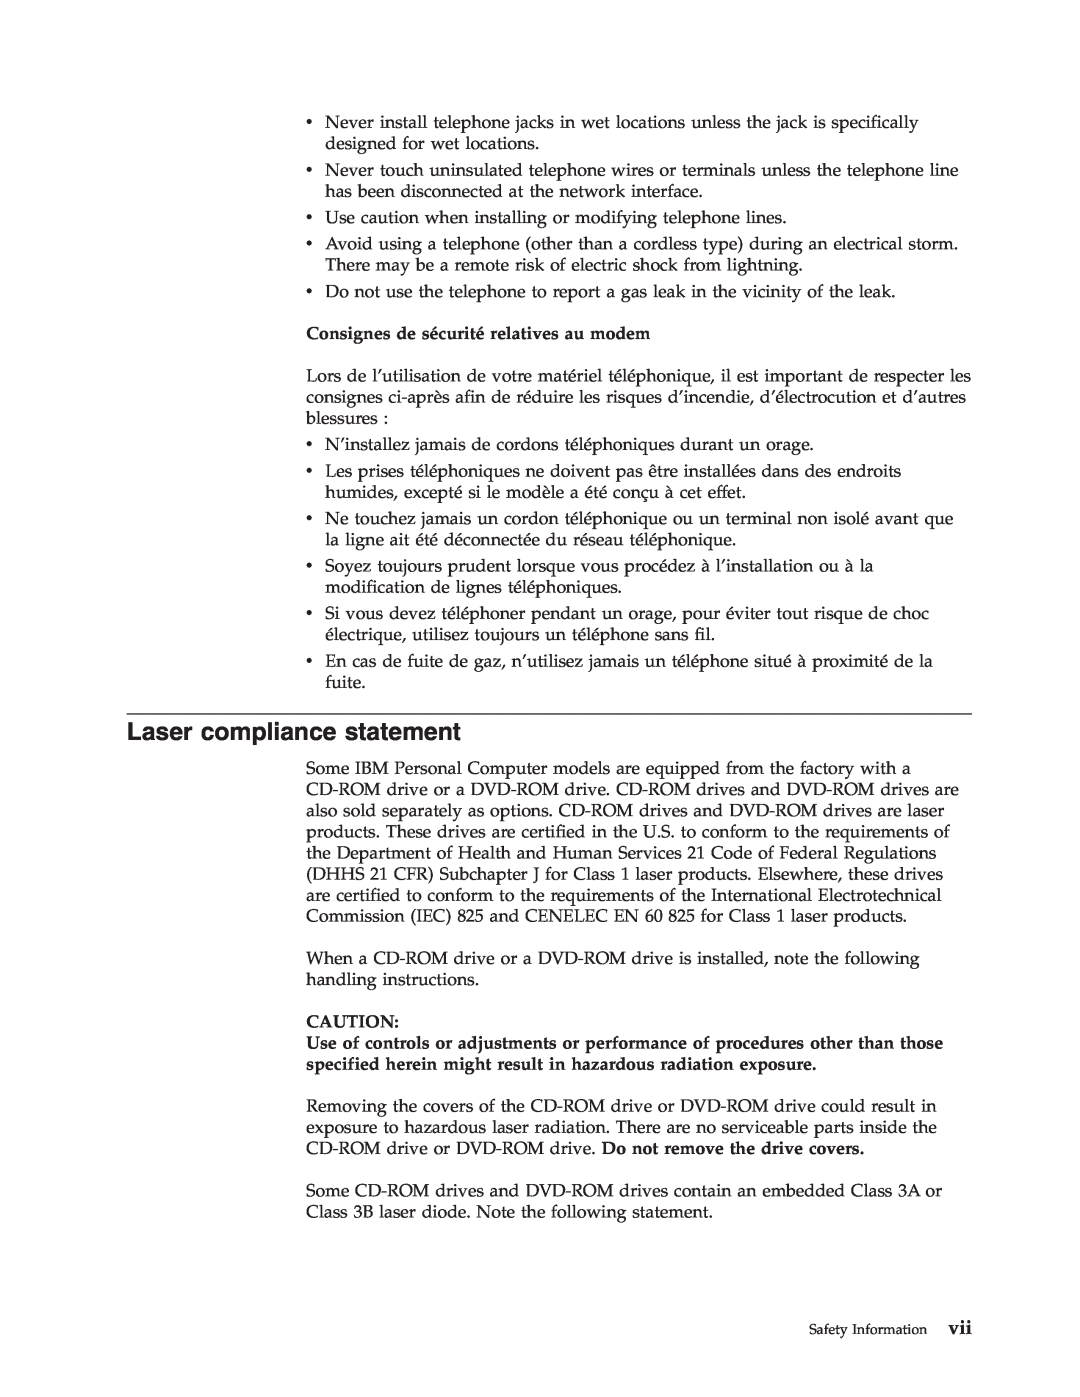 IBM 2289, 6824 manual Laser compliance statement, Consignes de sécurité relatives au modem 